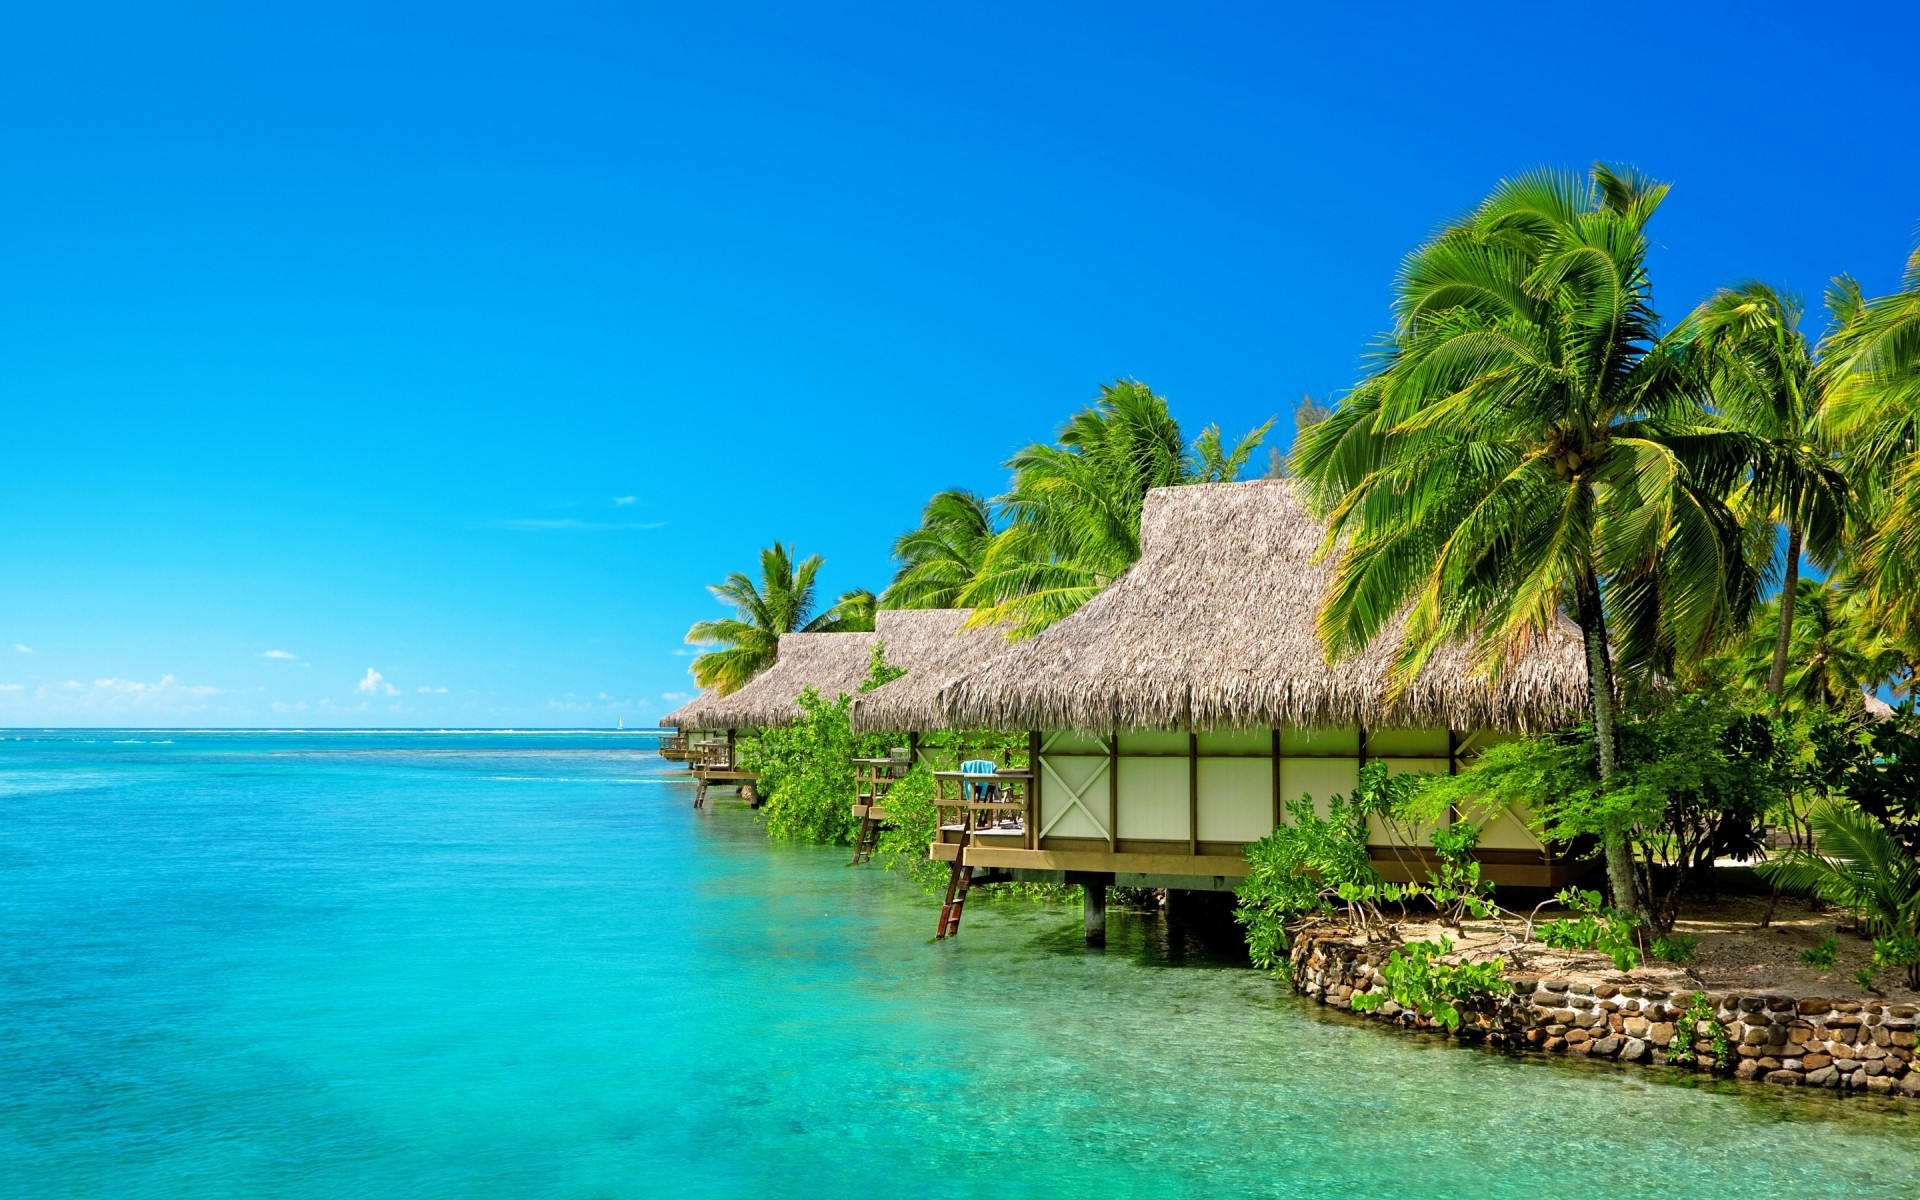 пейзажи тропический пляж остров экзотические рай ладони воды путешествия лето песок моря курорт океан отпуск идиллия бирюза релаксация кокосовое лагуна пейзаж пейзаж море пальмы